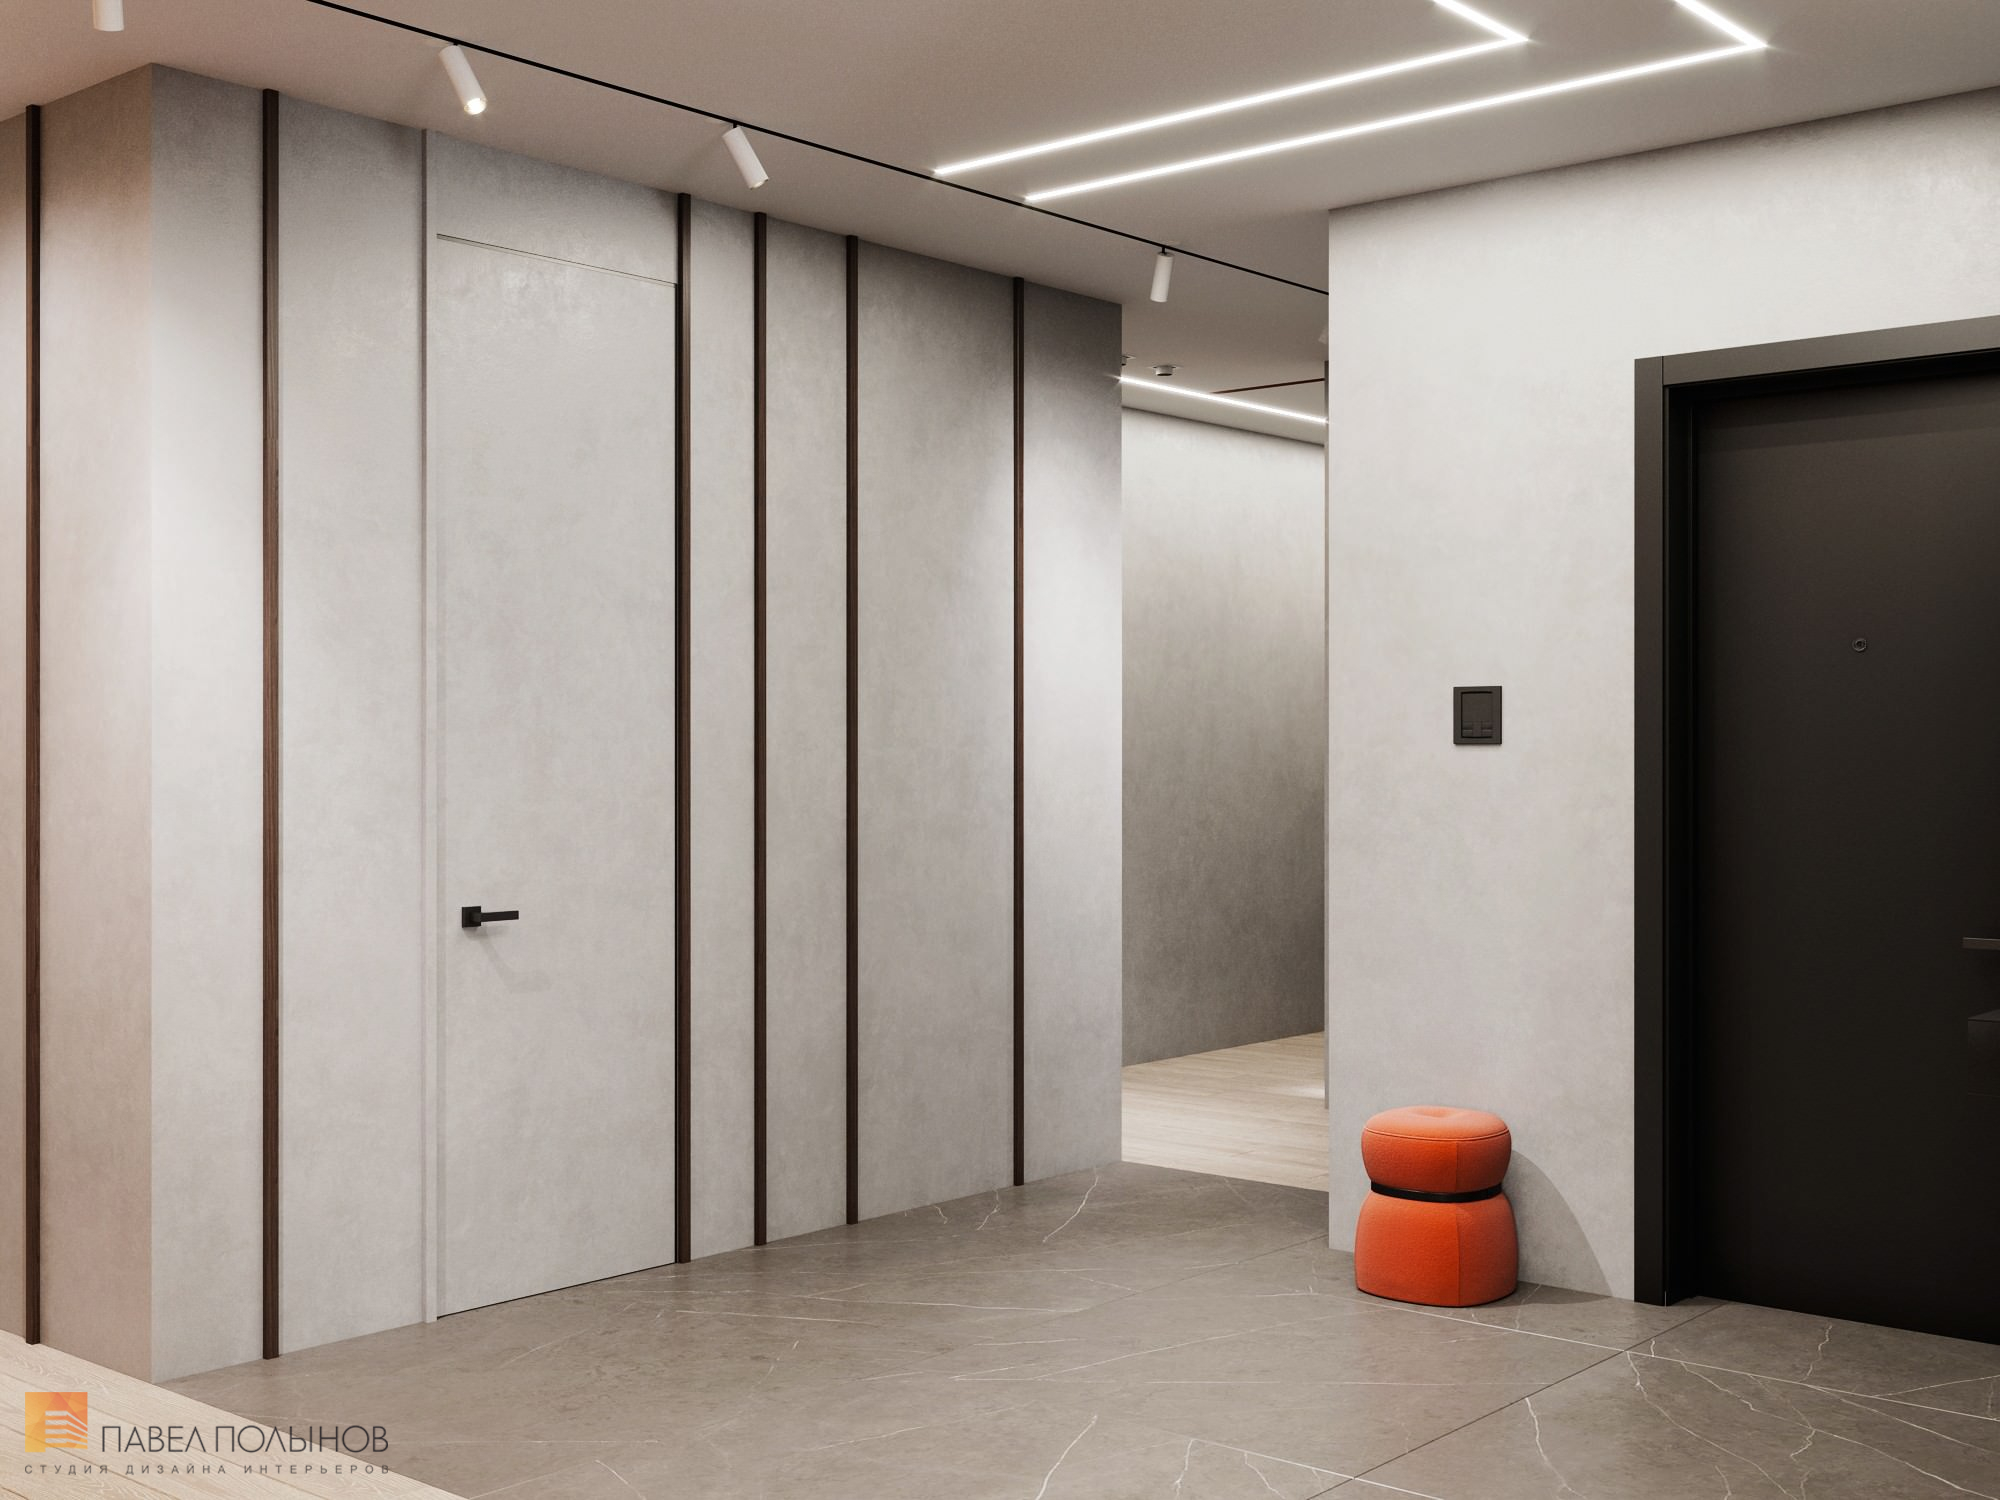 Фото дизайн интерьера прихожей из проекта «Дизайн интерьера квартиры в ЖК «Крестовский Deluxe», современный стиль, 233 кв.м.»